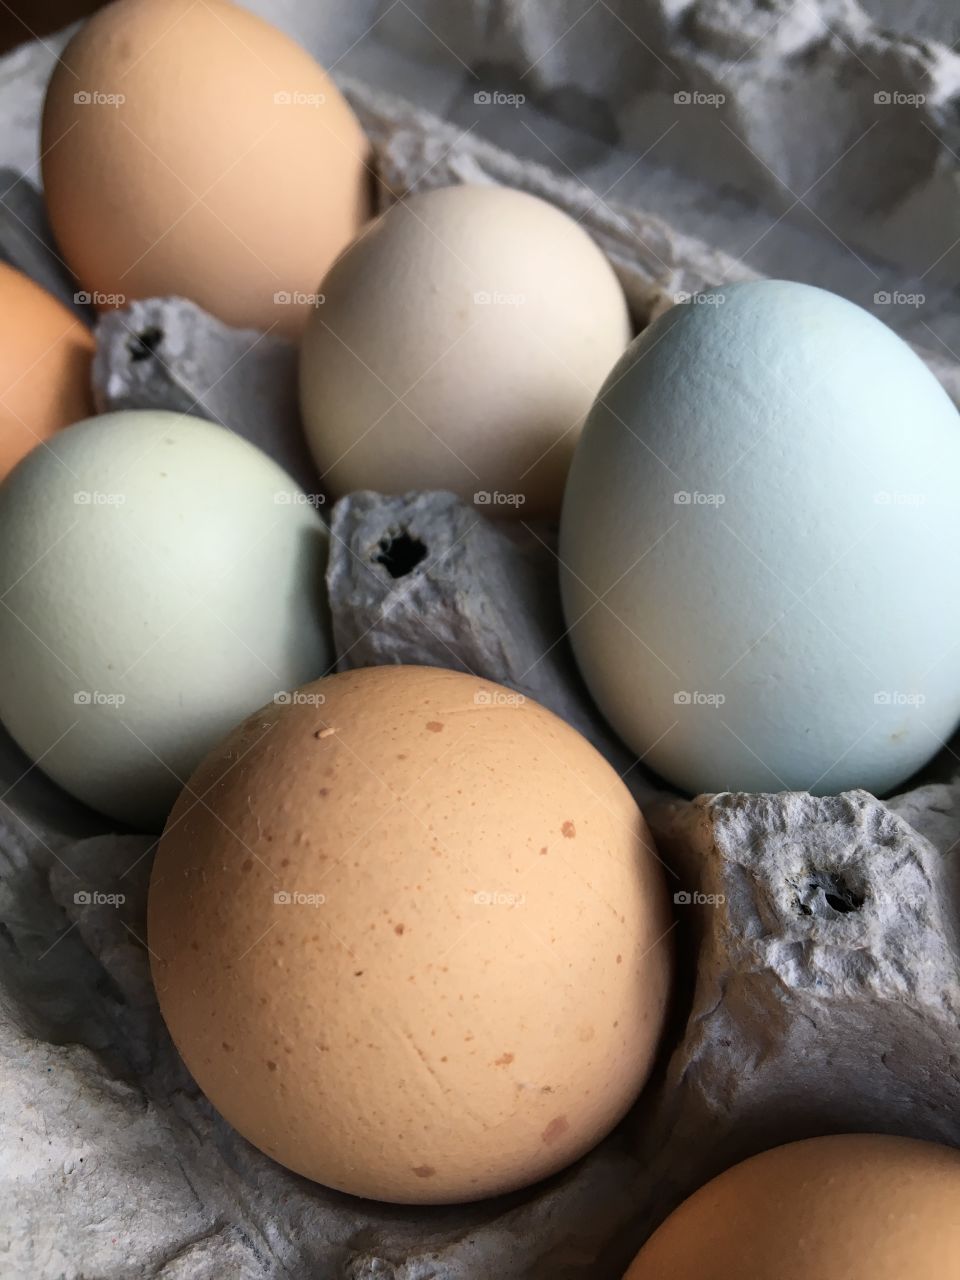 Blue, green and brown farm fresh eggs.